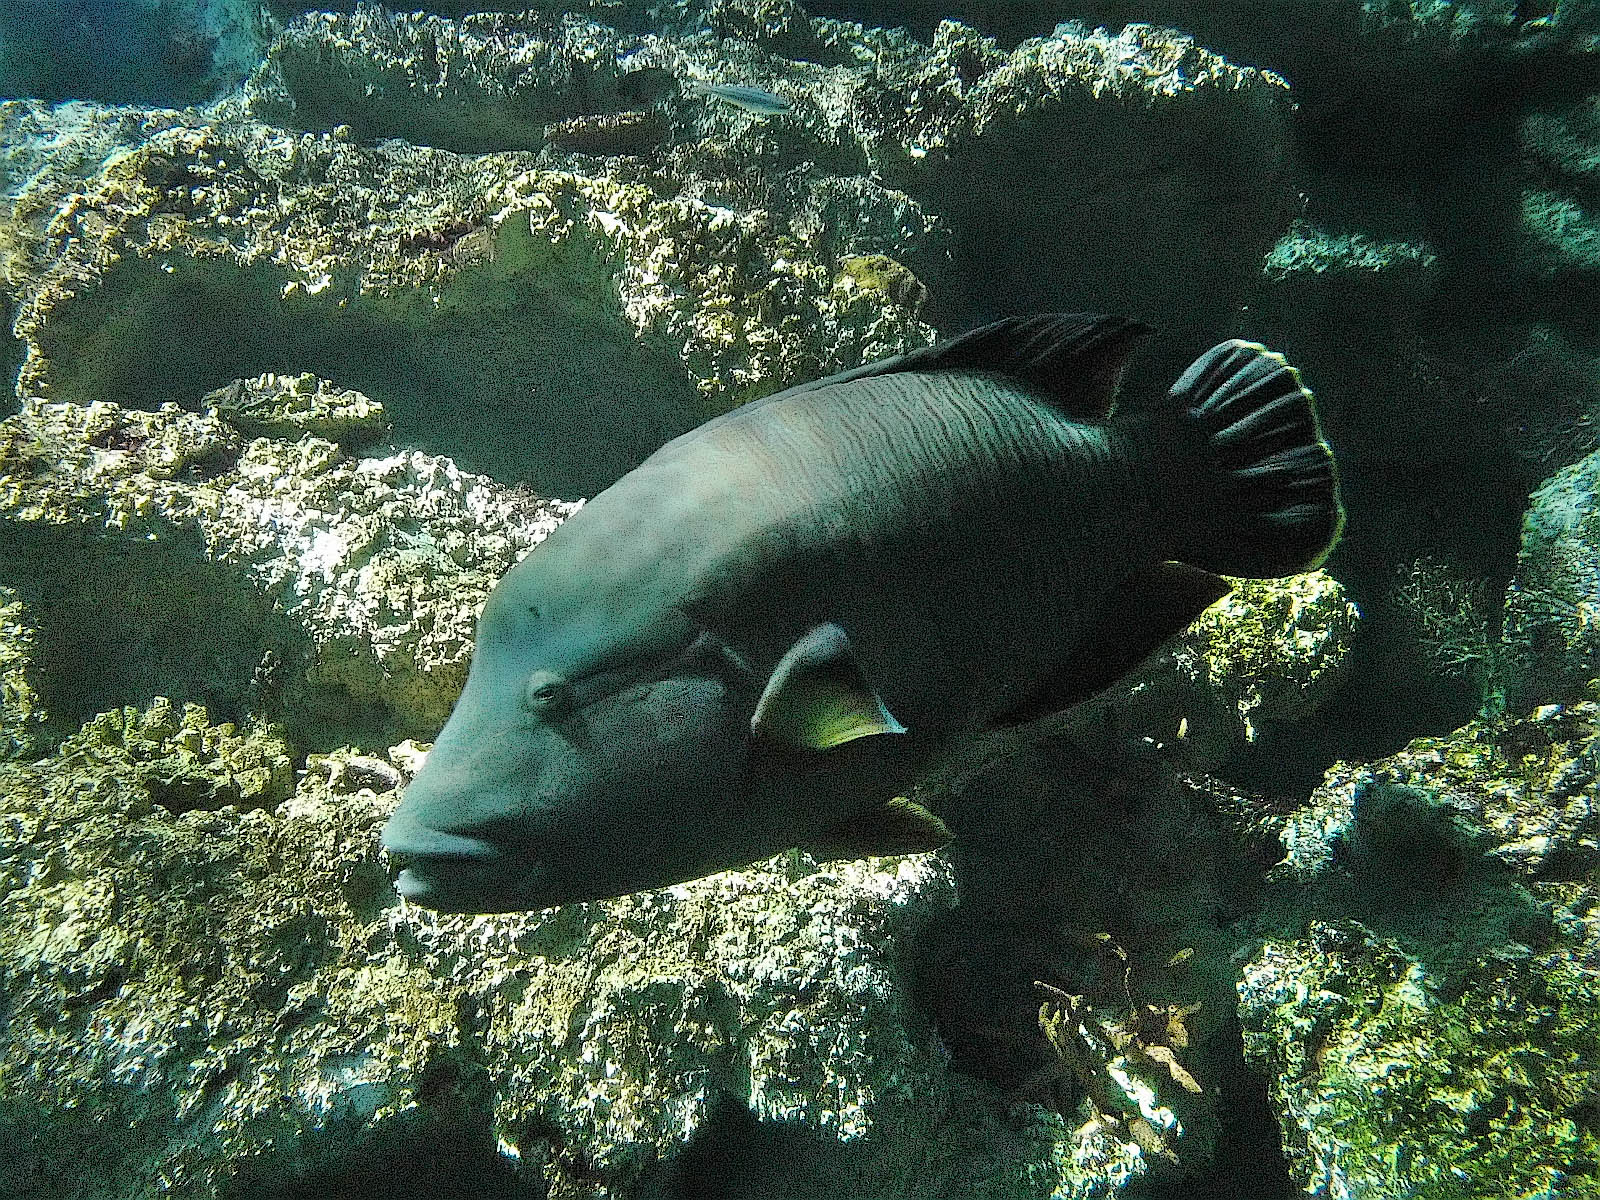 fish image